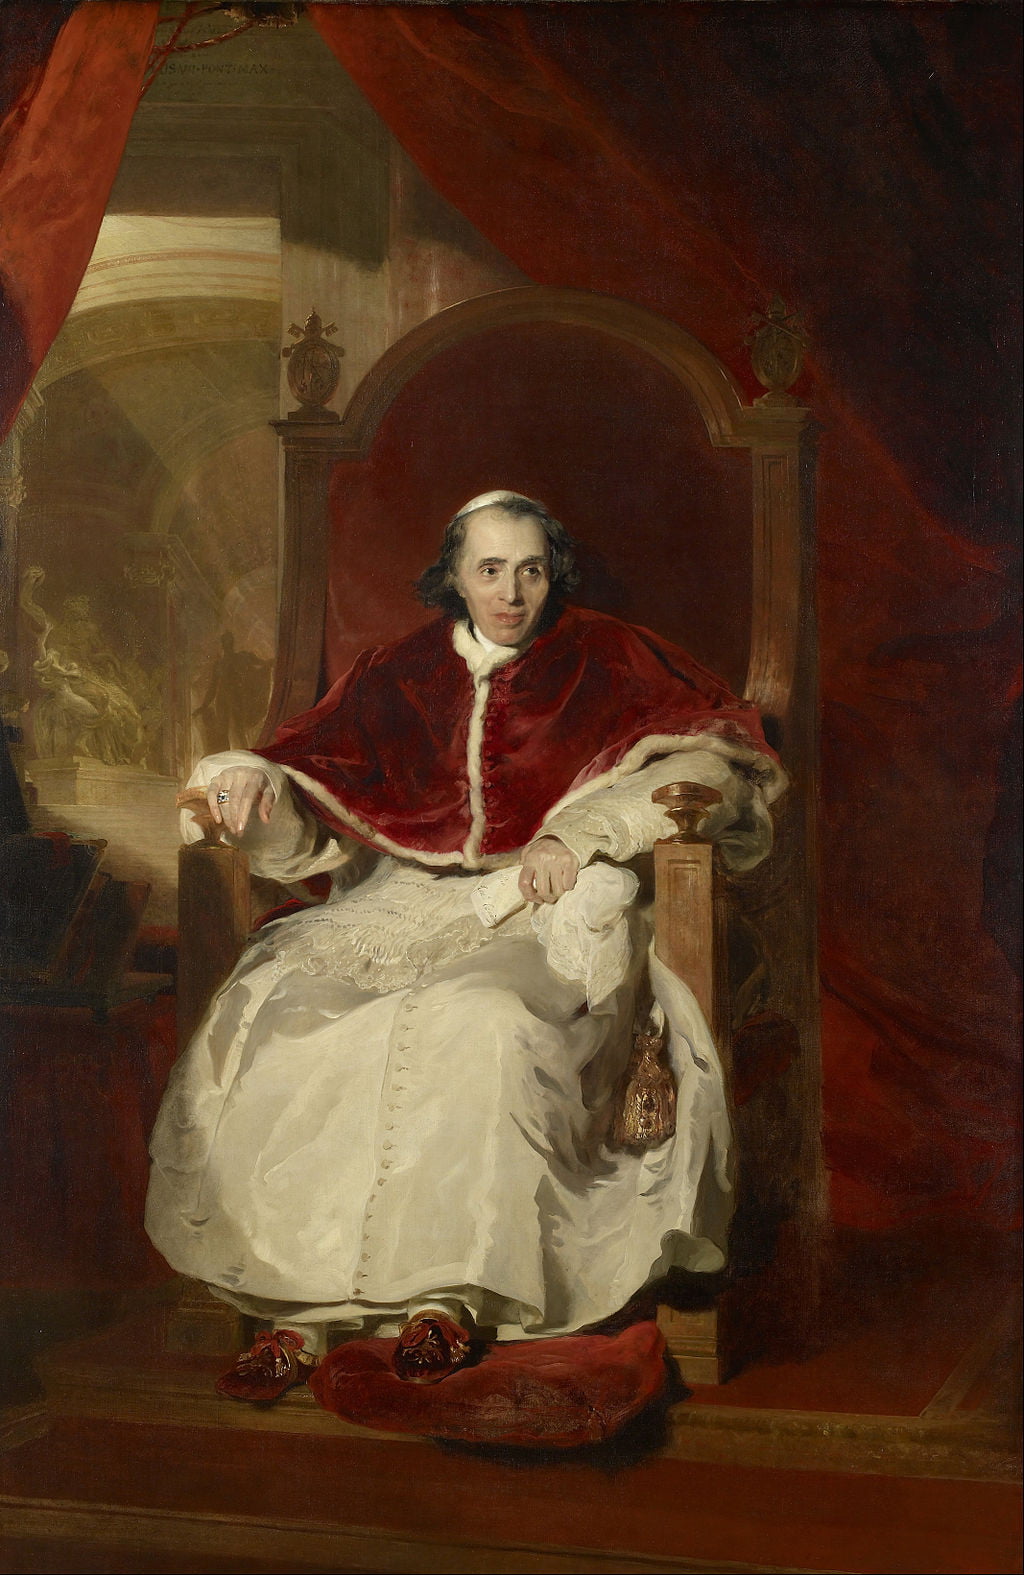 교황 비오 7세(1819). 교황을 그리는 건 어느 시대나 최고의 영예였다. 그의 권위는 물론 개인적인 성품까지 잘 그려냈다는 찬사를 받았다./왕실 컬렉션